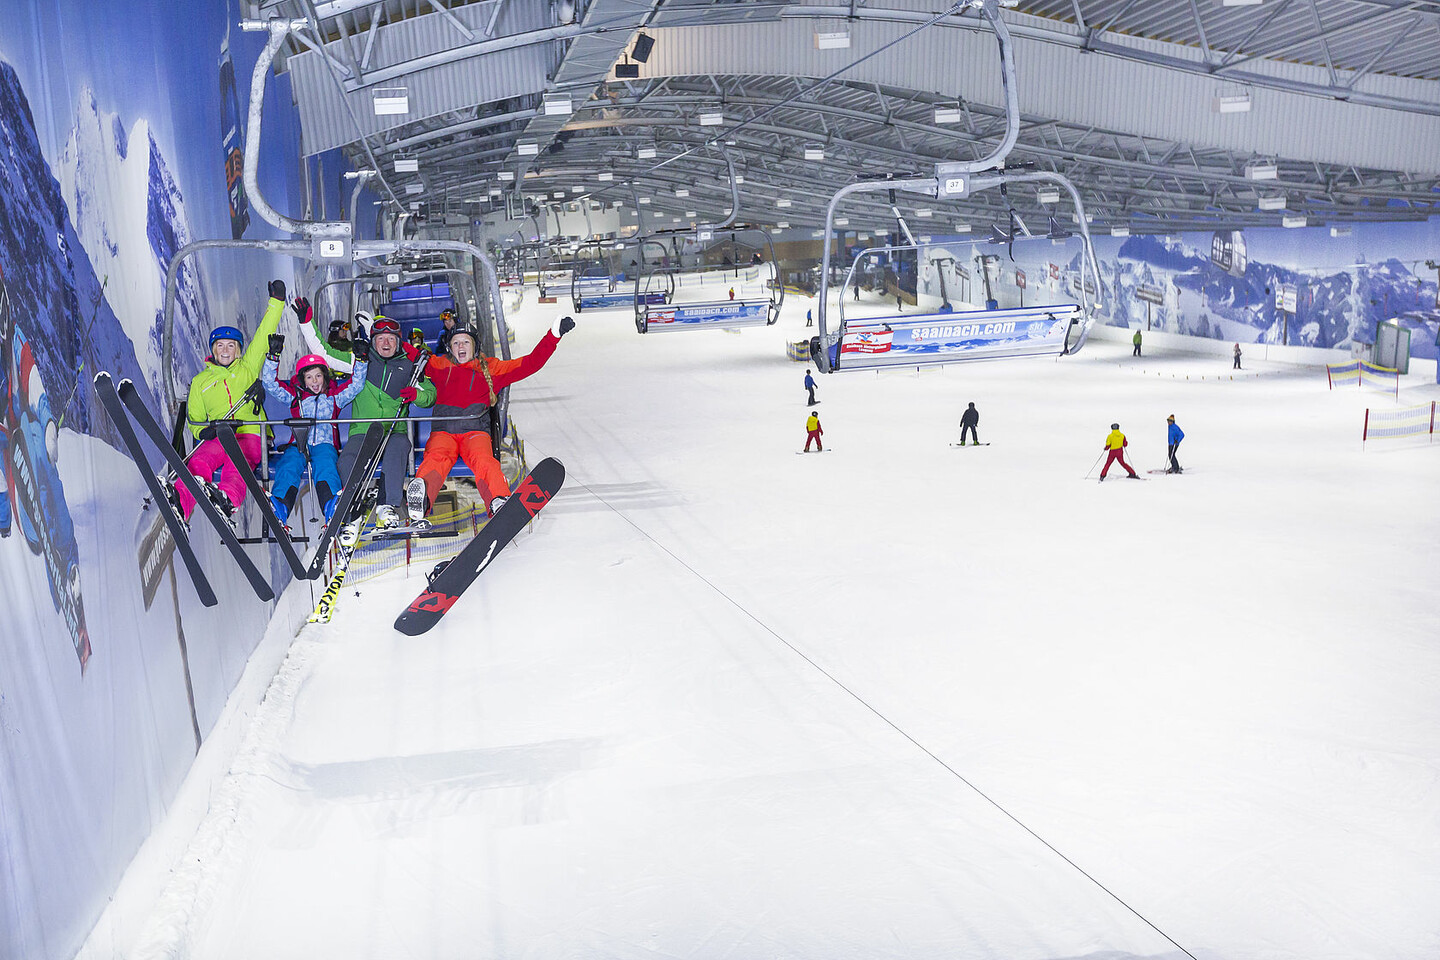 Caius Basistheorie Vijftig De grootste skihallen in Europa - Langste indoor skipistes - Skiën in de hal